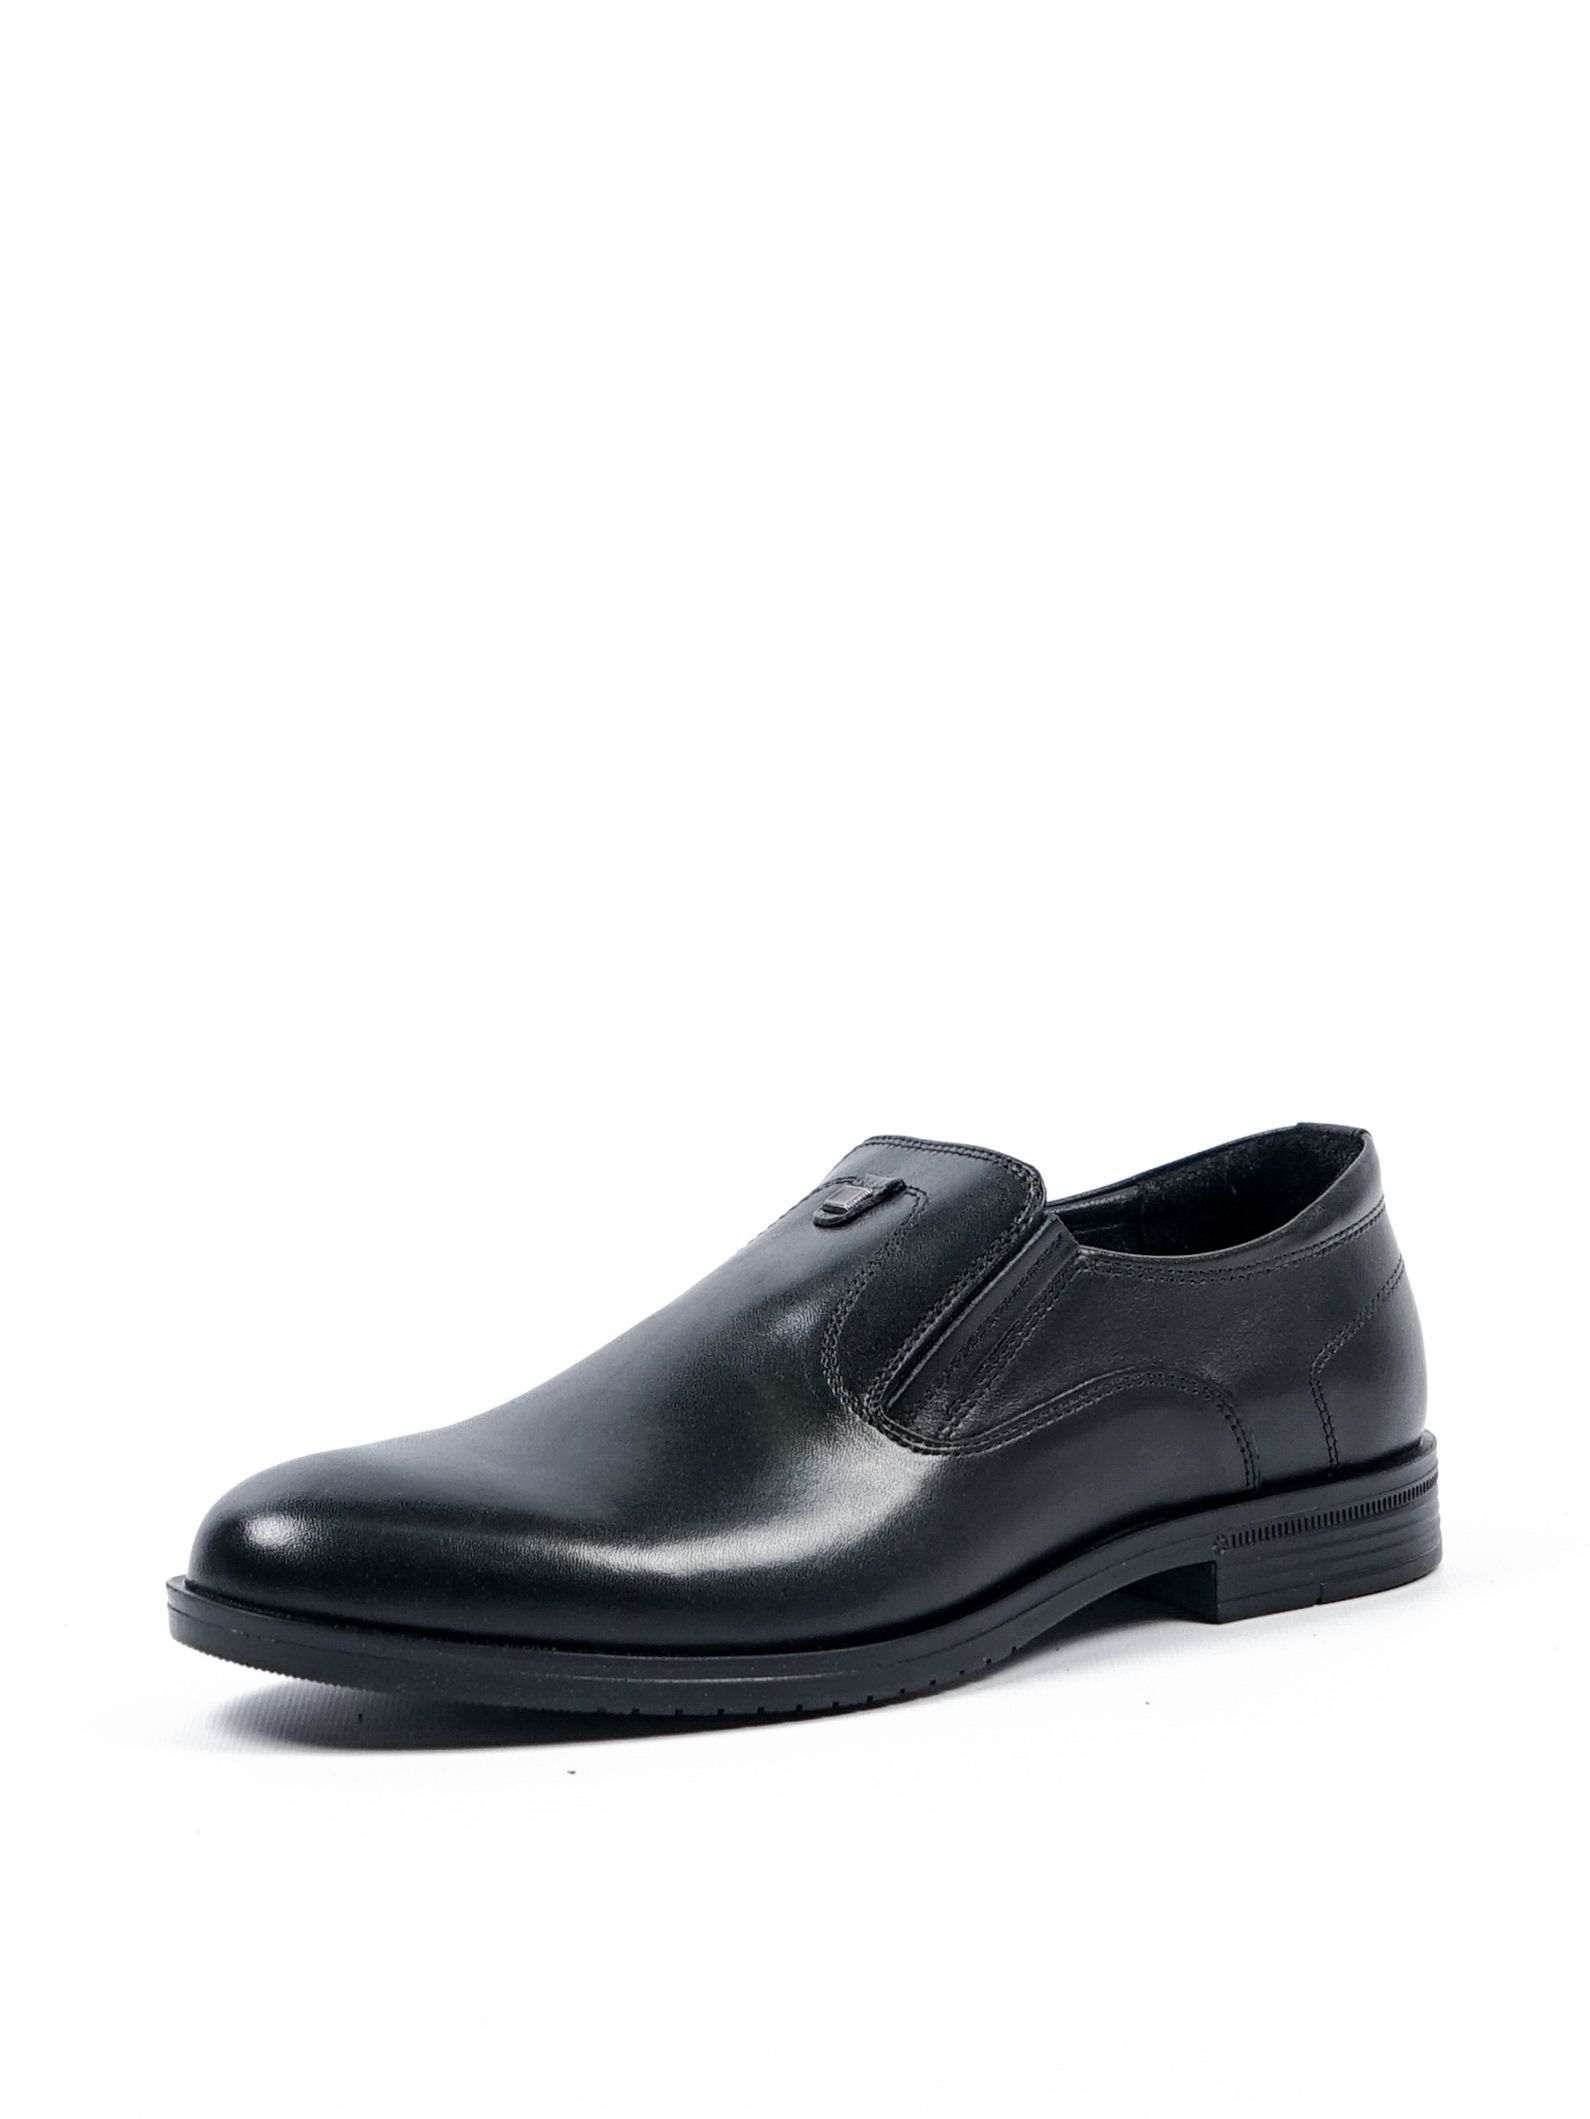 Туфли мужские Comfort Shoes 1133M черные 44 RU